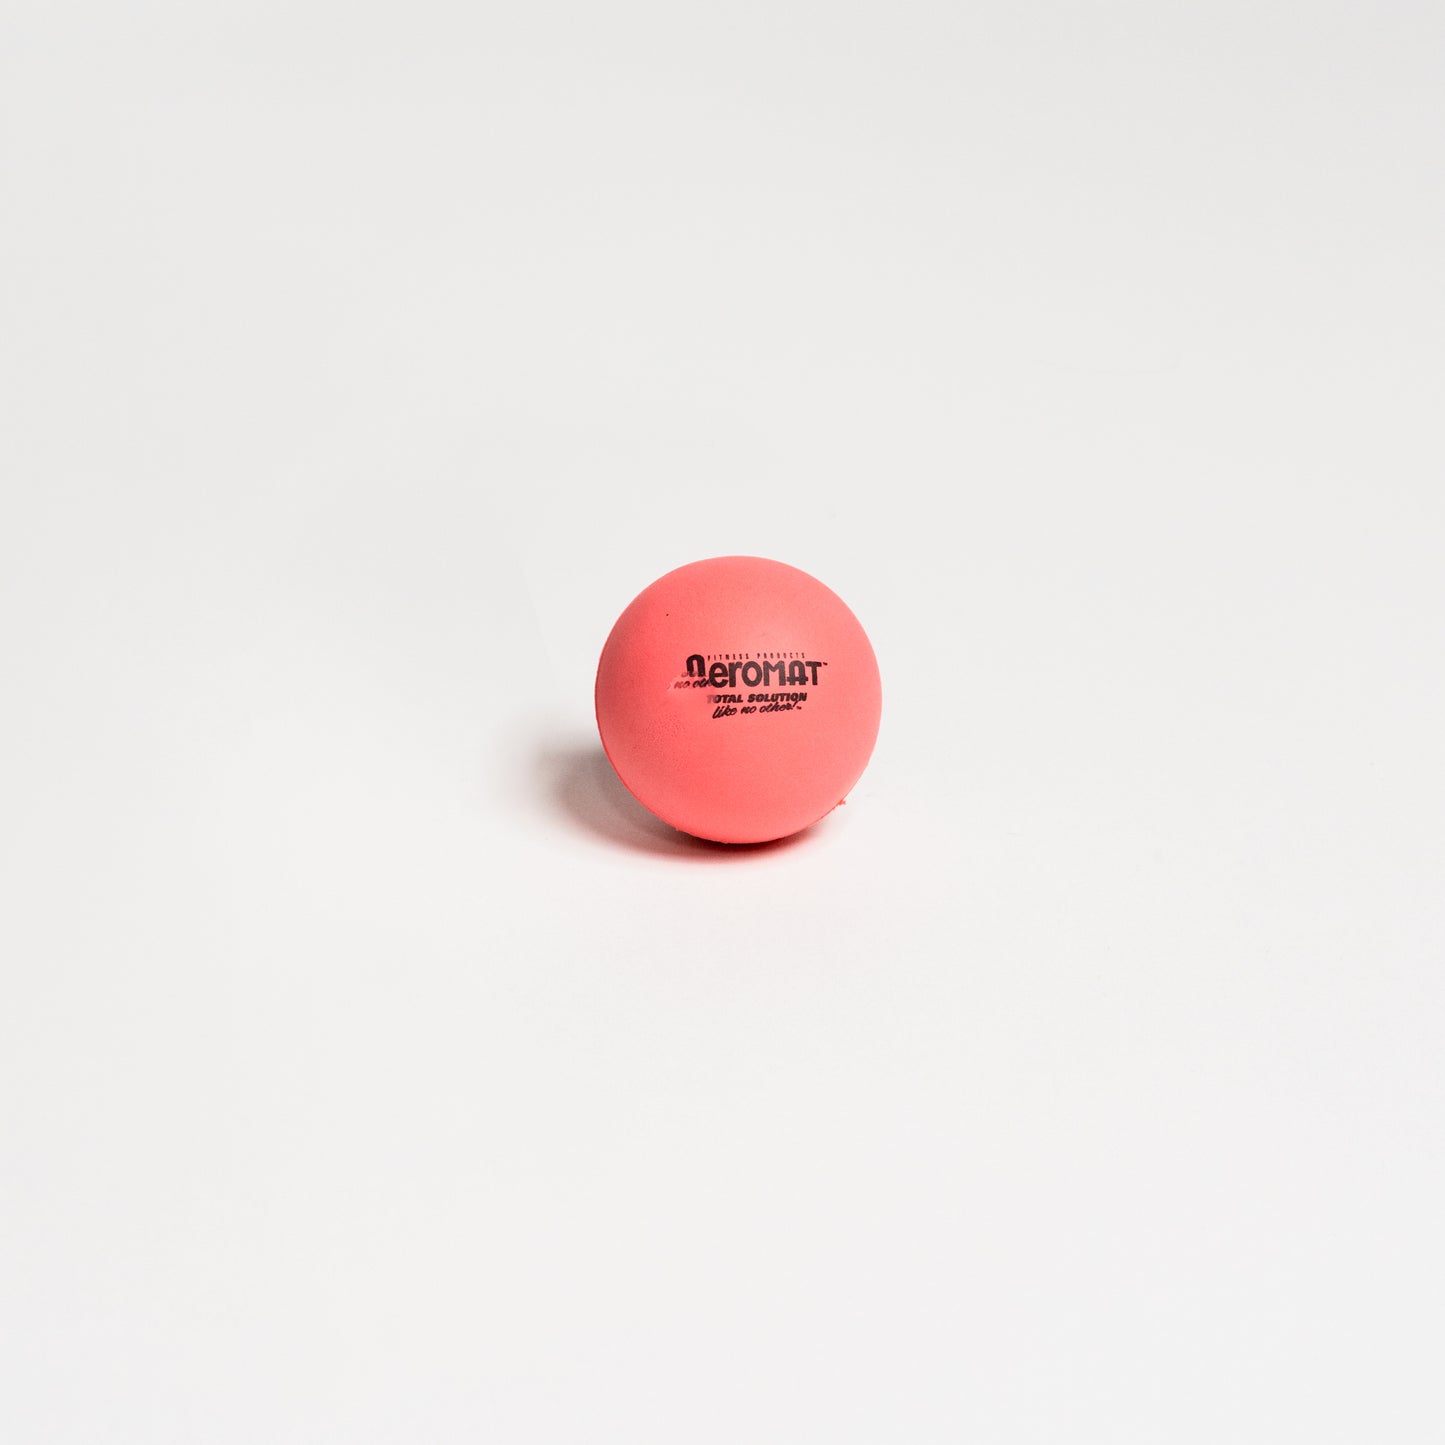 Aeromat Mini Hard Ball